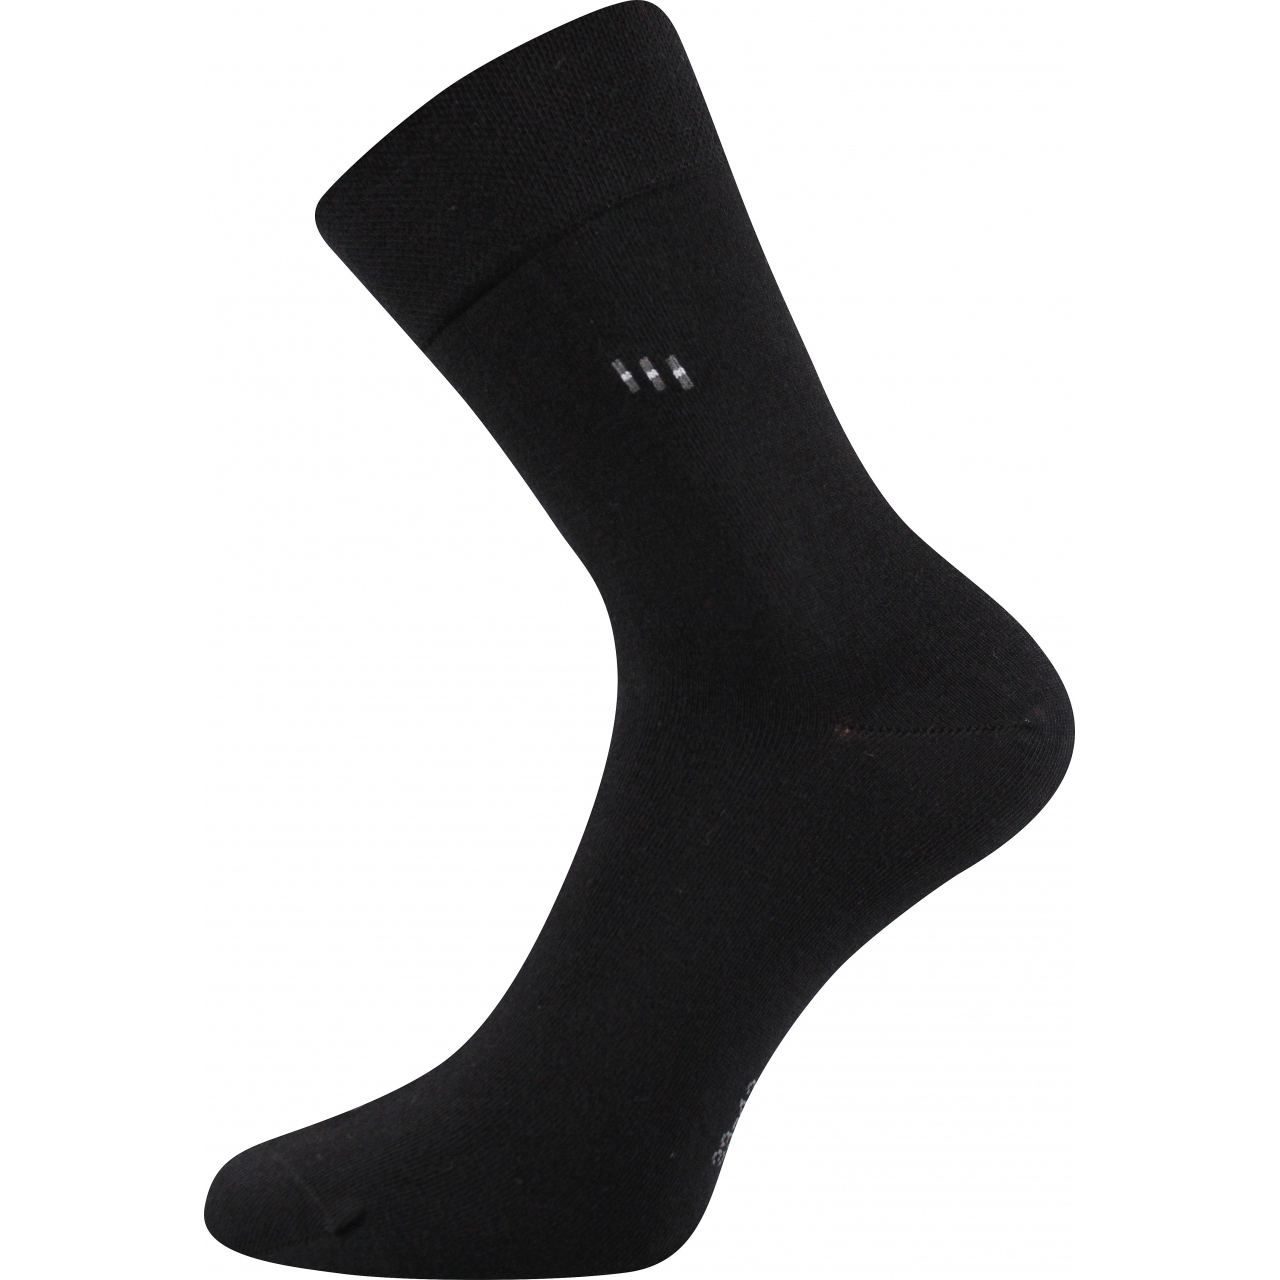 Ponožky pánské společenské Lonka Dipool - černé, 43-46